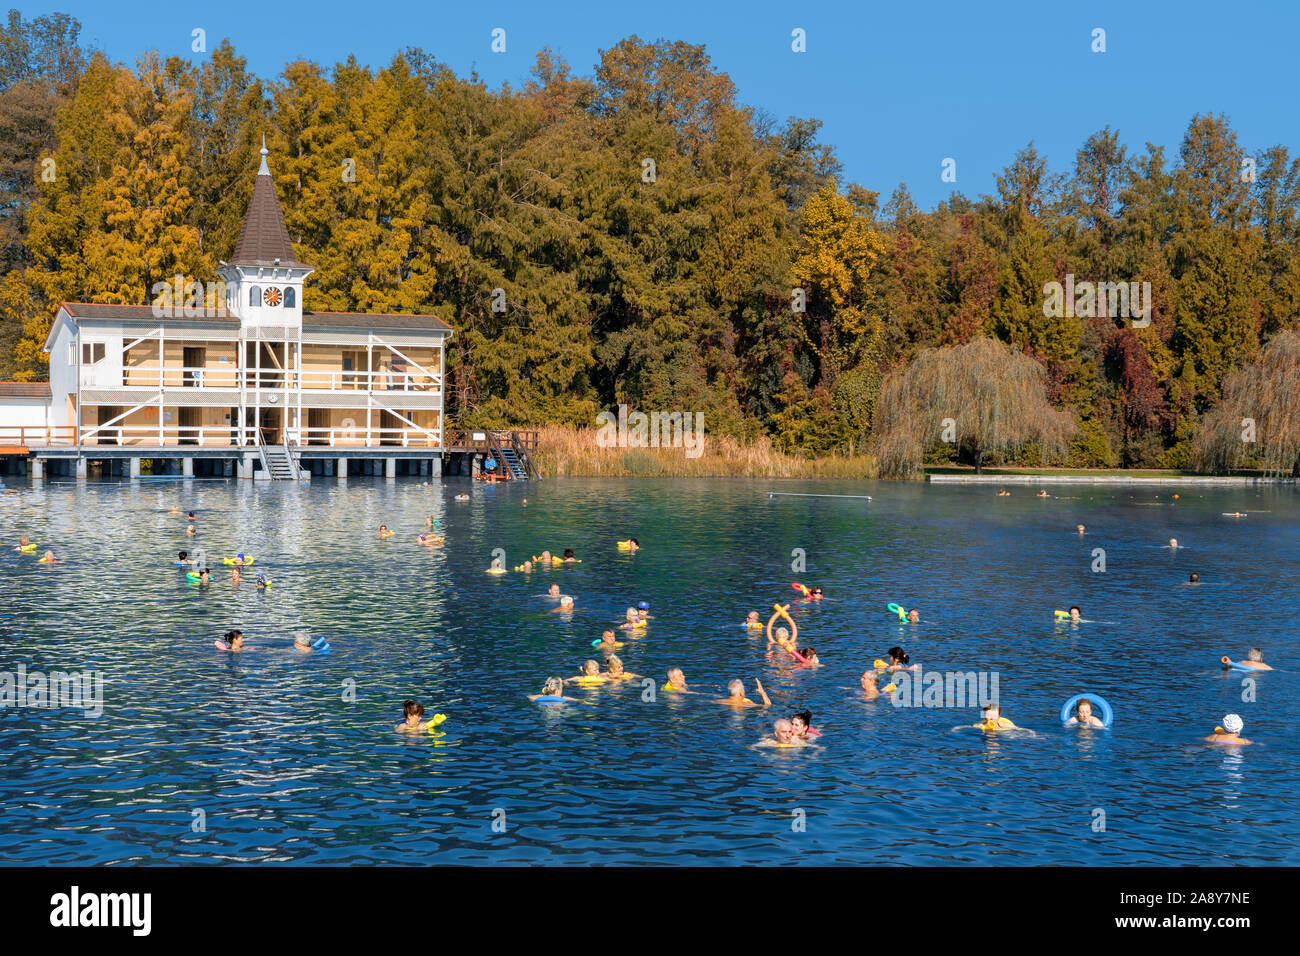 Heviz, Ungarn 10.08.2019: Menschen schwimmen im berühmten Heviz balneologischen Thermalbad Teich in Ungarn Park Herbst Stockfoto